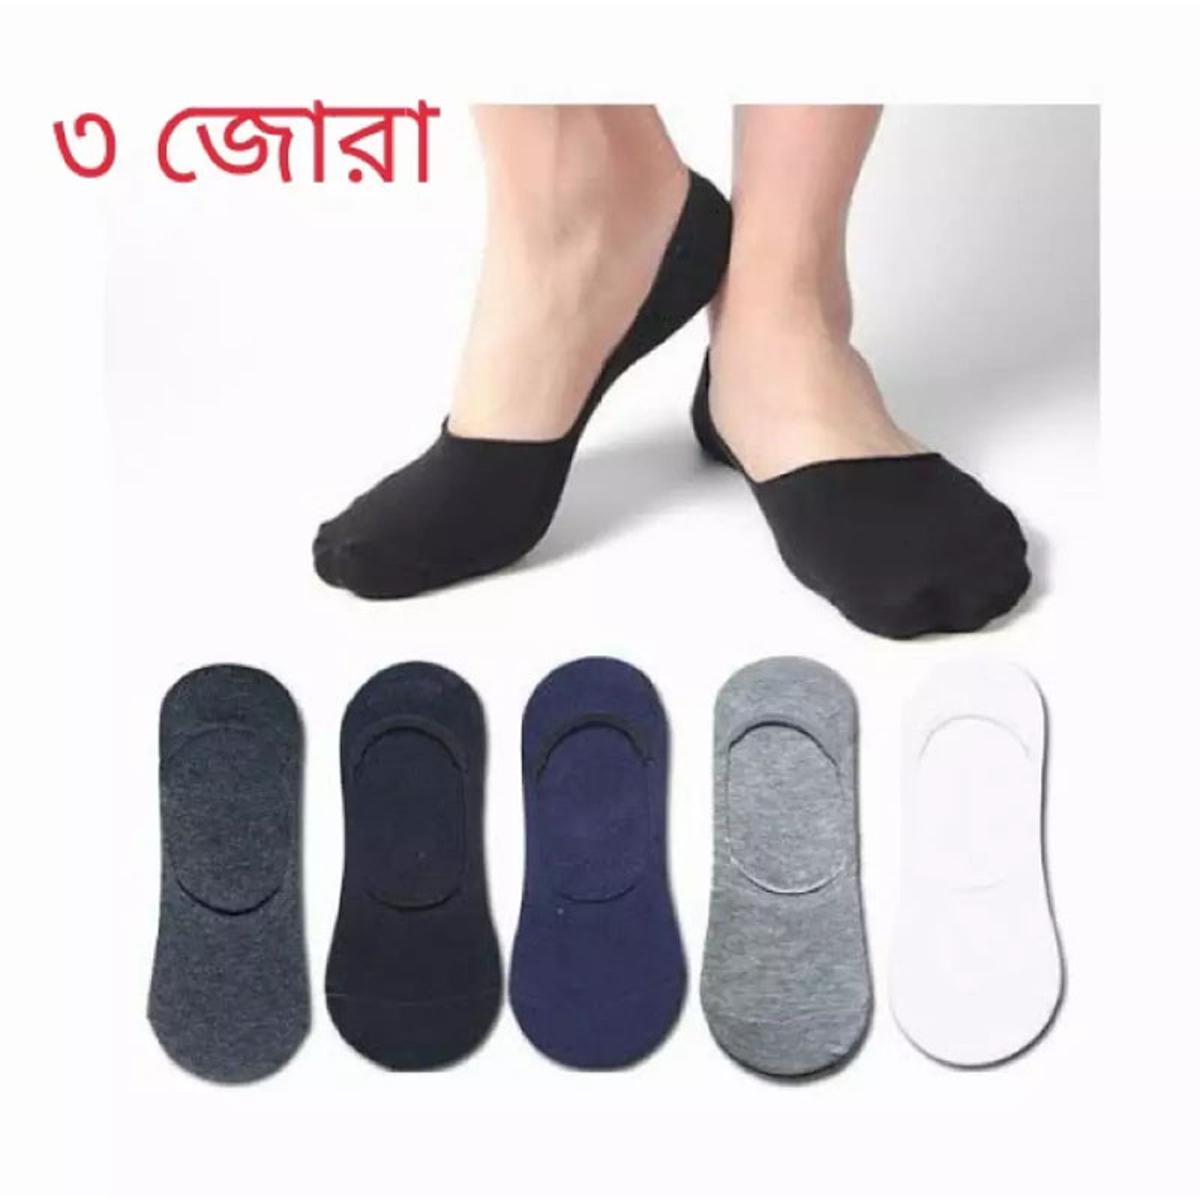 3 pair for loafar quality brand grader ankle socks for man